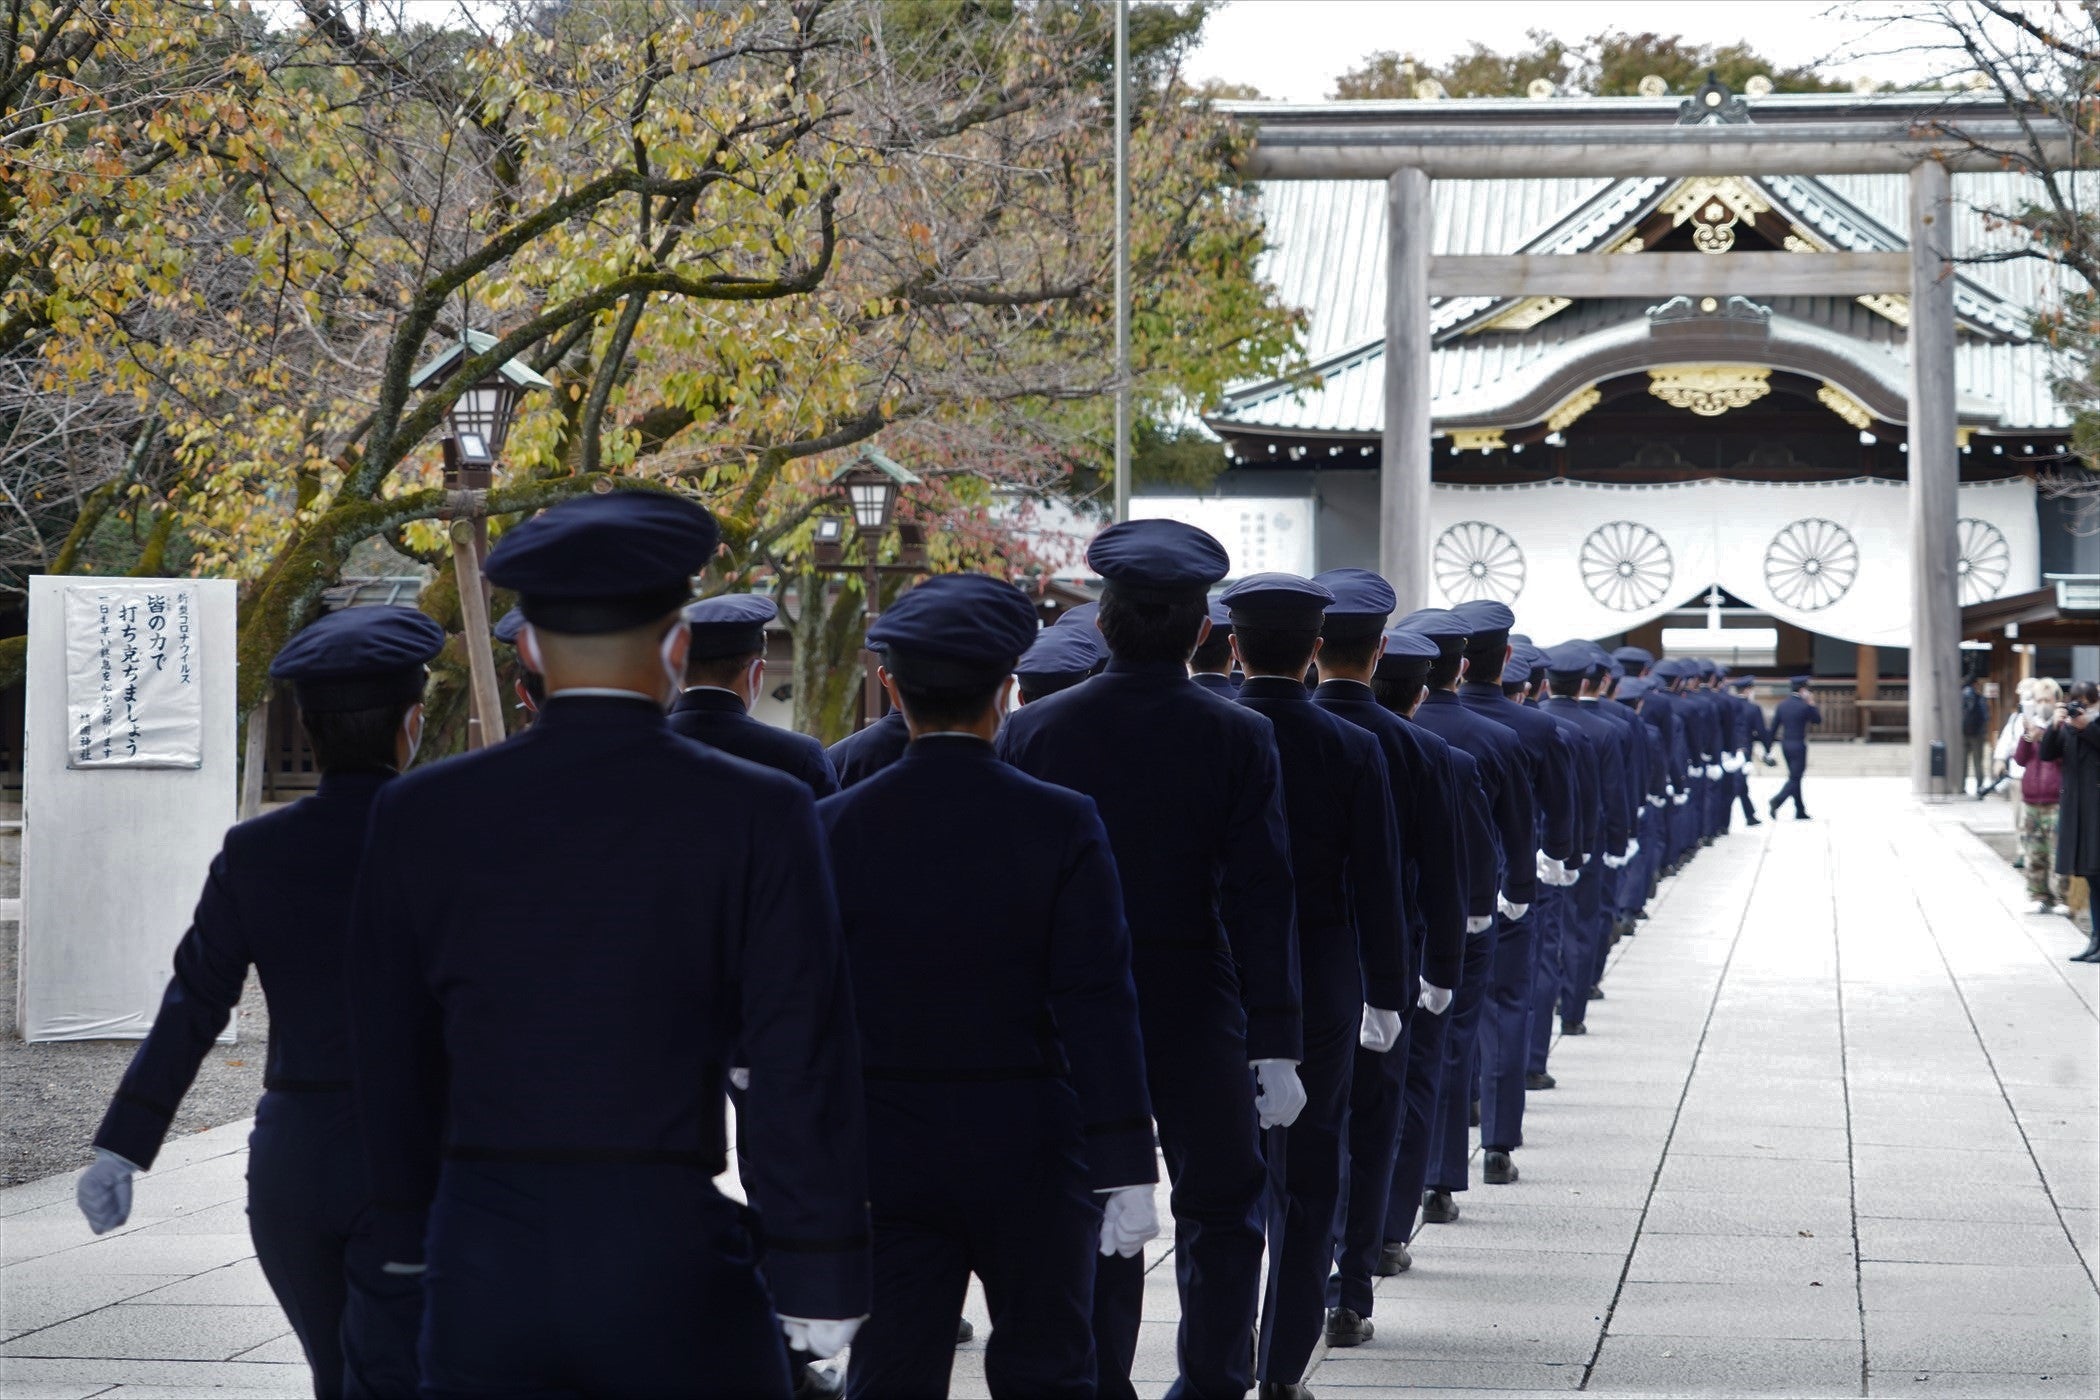 【靖國】恒例の『防衛大学校生』東京行進。前日に横須賀の防衛大学校正門を出発して靖国神社に到着をすると制服に着替えて参拝をされています。